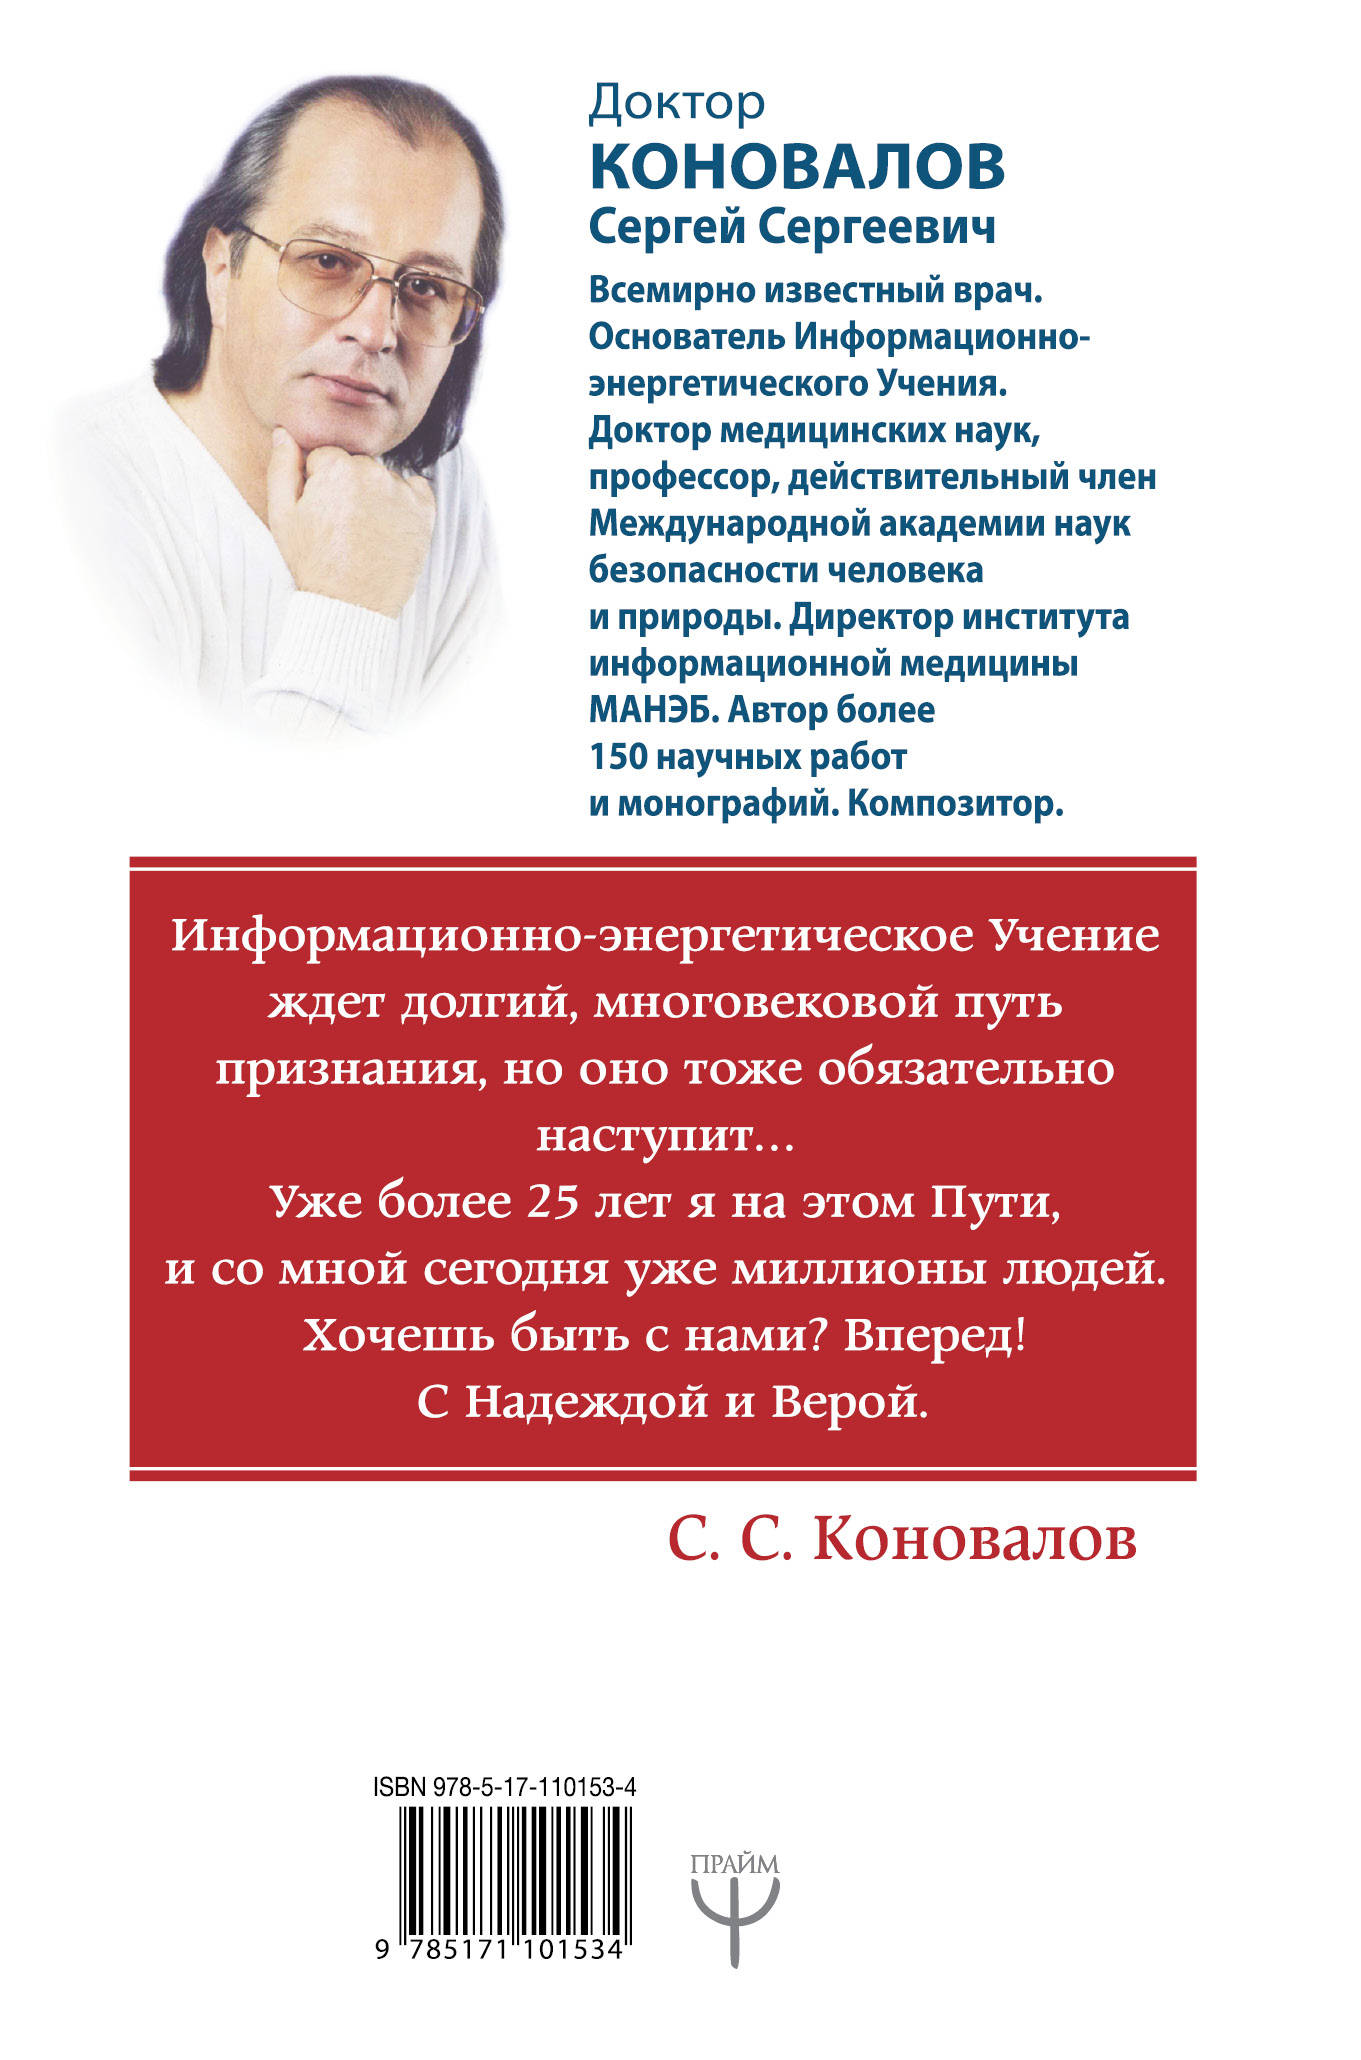 Сайт коновалова сергея сергеевича главная страница. Доктор Коновалов в Санкт Петербурге.